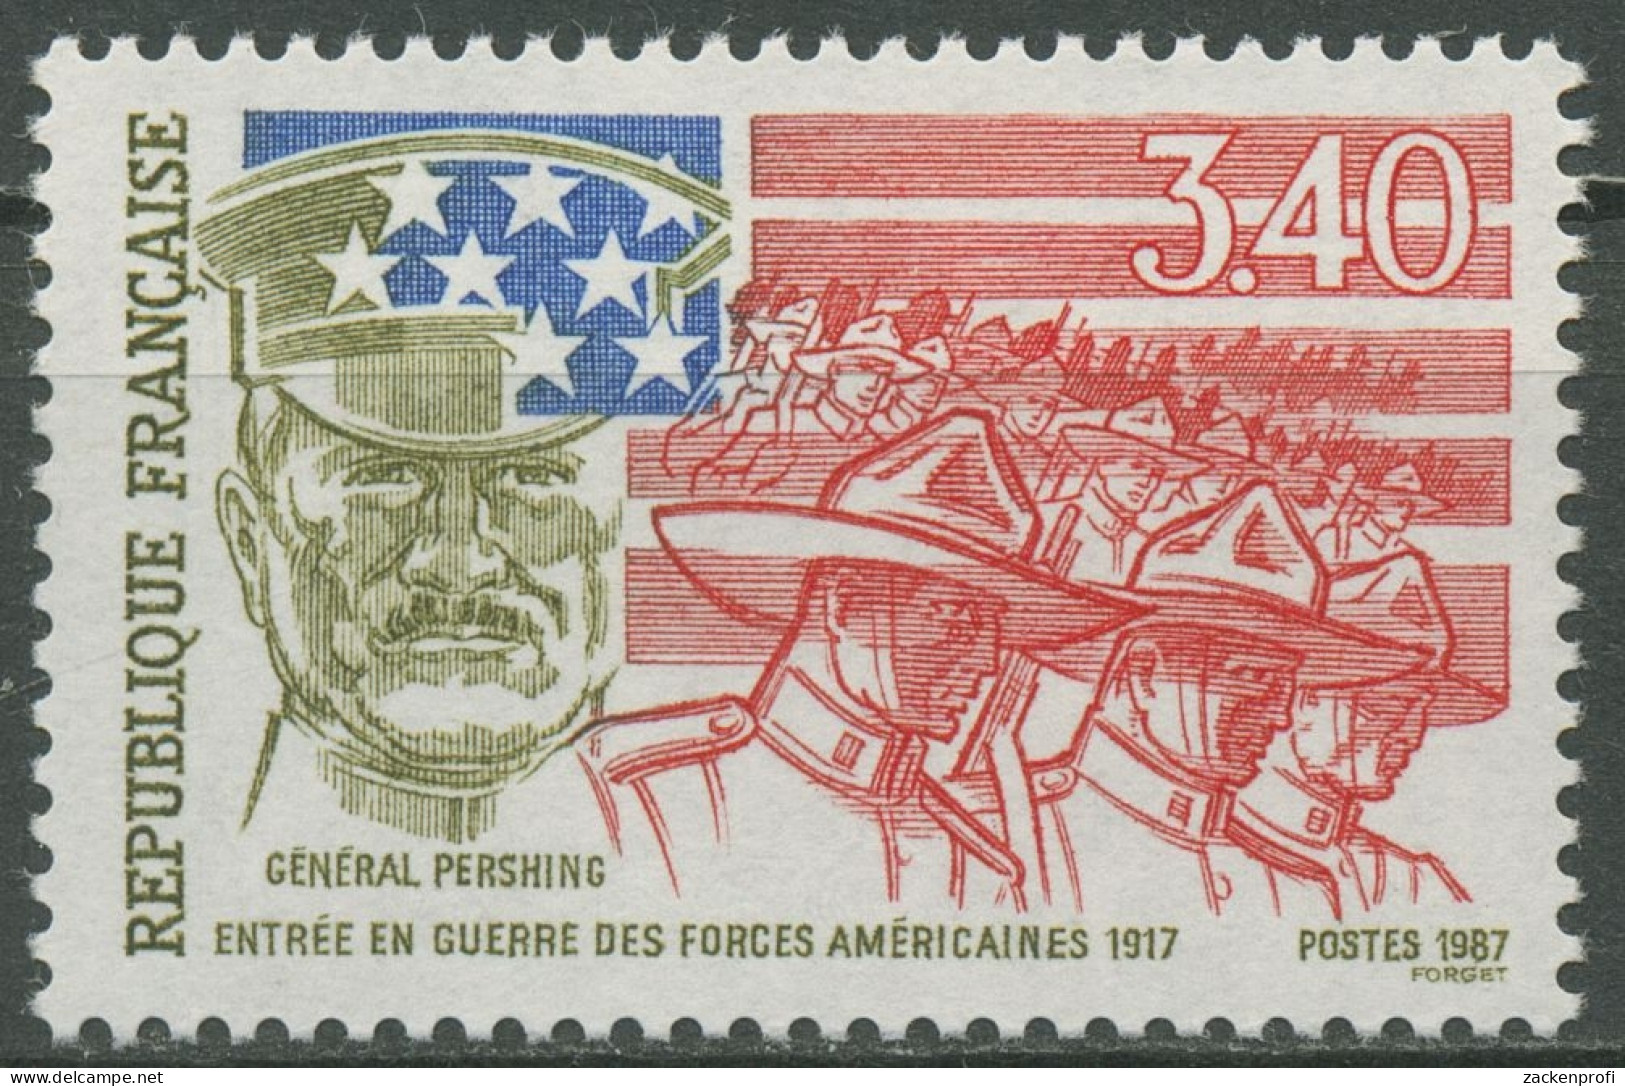 Frankreich 1987 USA Beginn Erster Weltkrieg 2612 Postfrisch - Ongebruikt